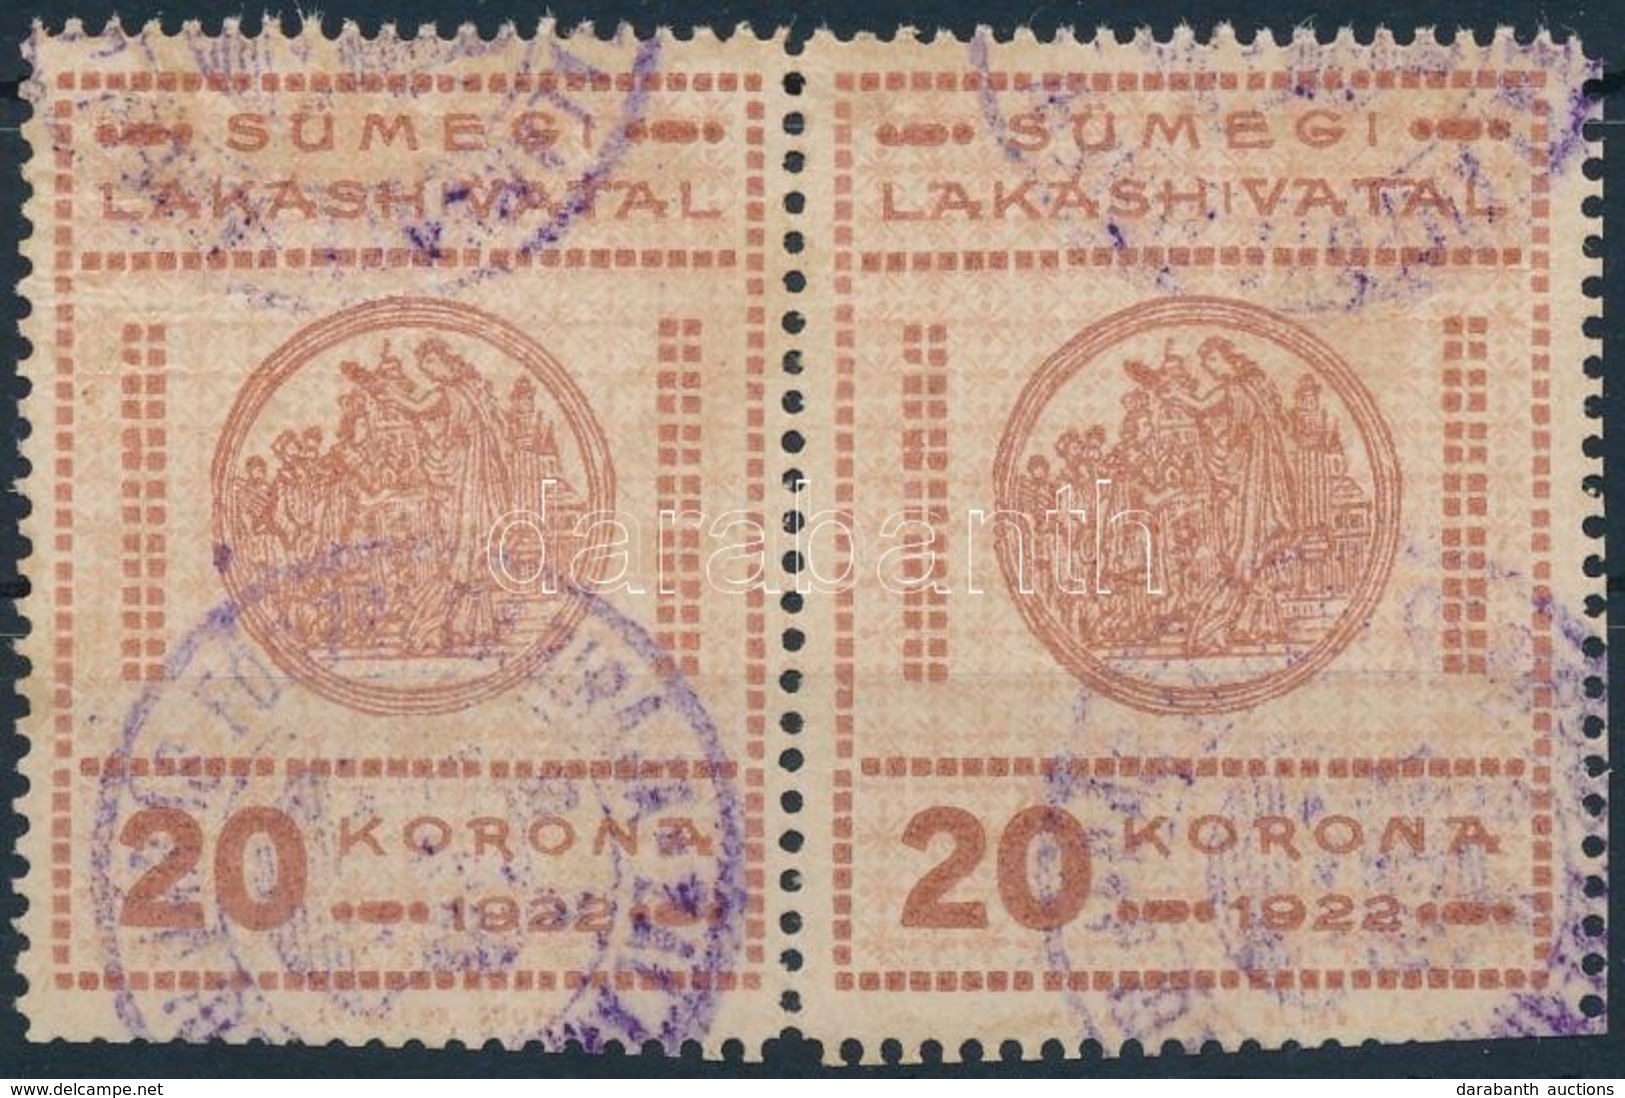 1922 Sümeg Városi Lakáshivatali Bélyeg 20K Pár (22.000) - Zonder Classificatie